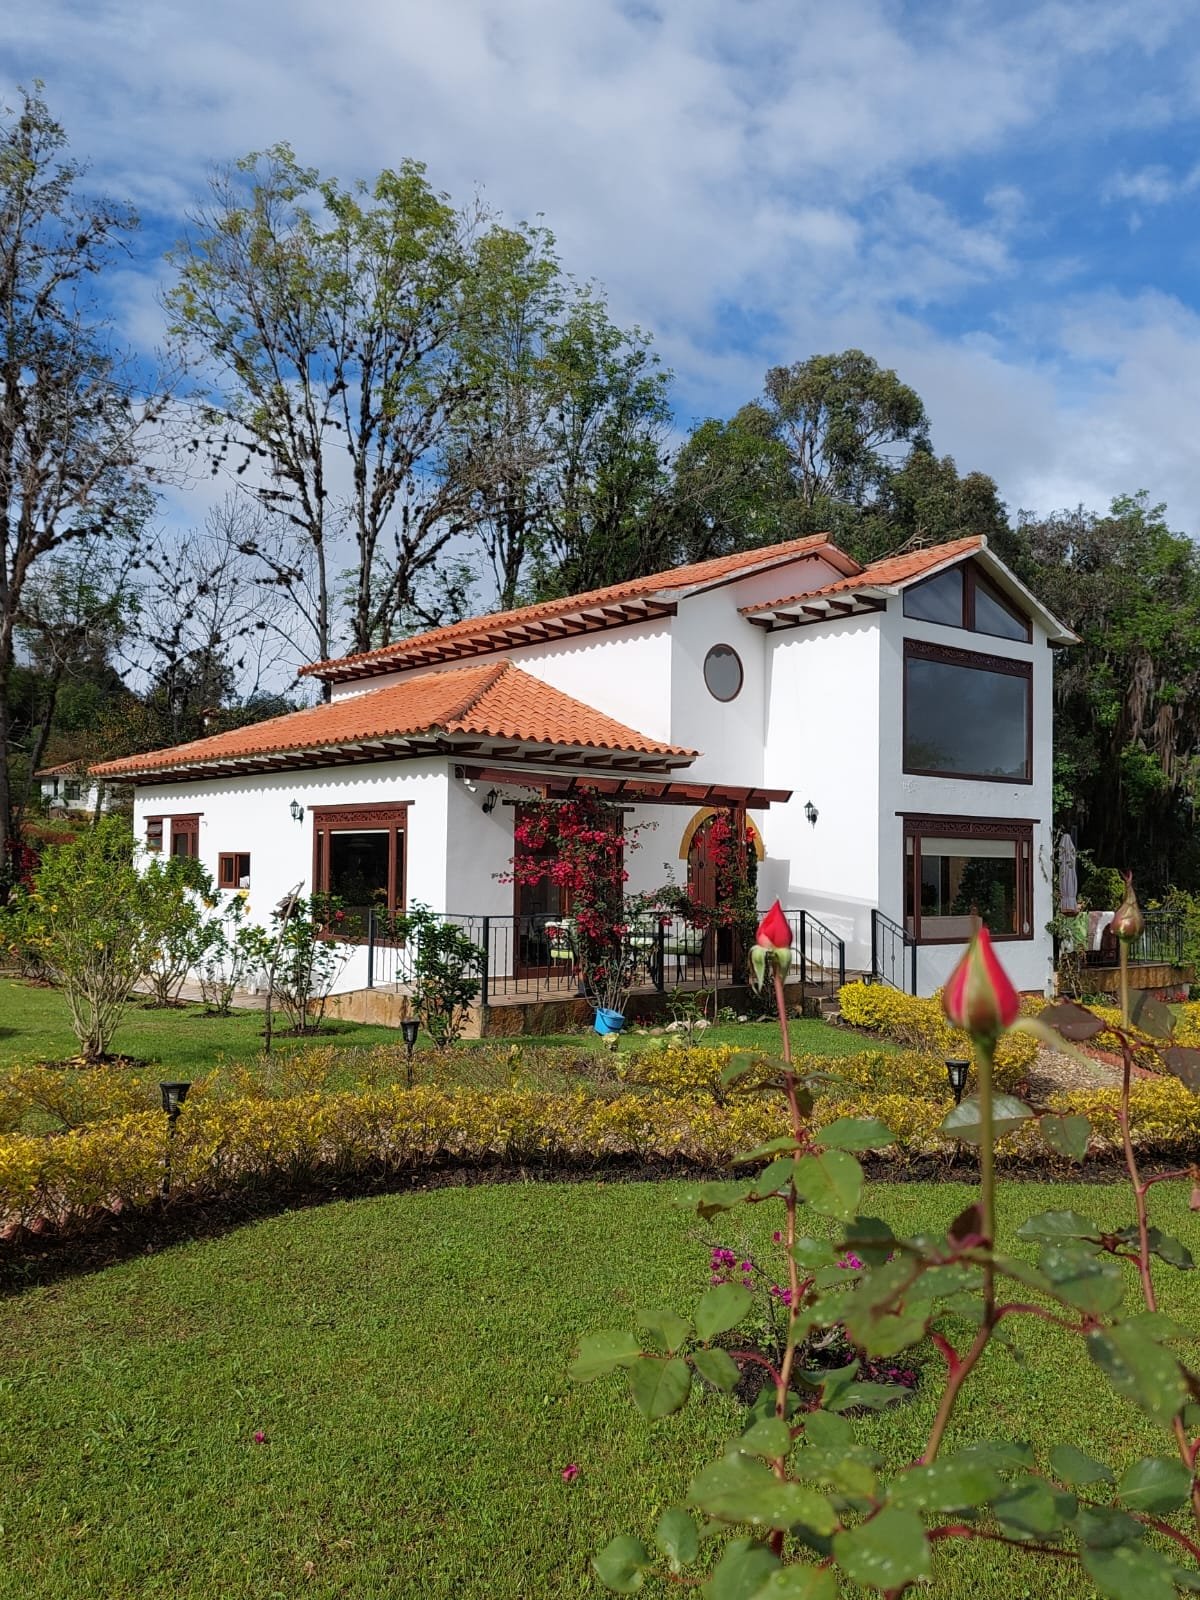 Hermosa casa Campestre en Villa de Leyva - Casa campestre - Inversiones Villa de Leyva - Boyacá